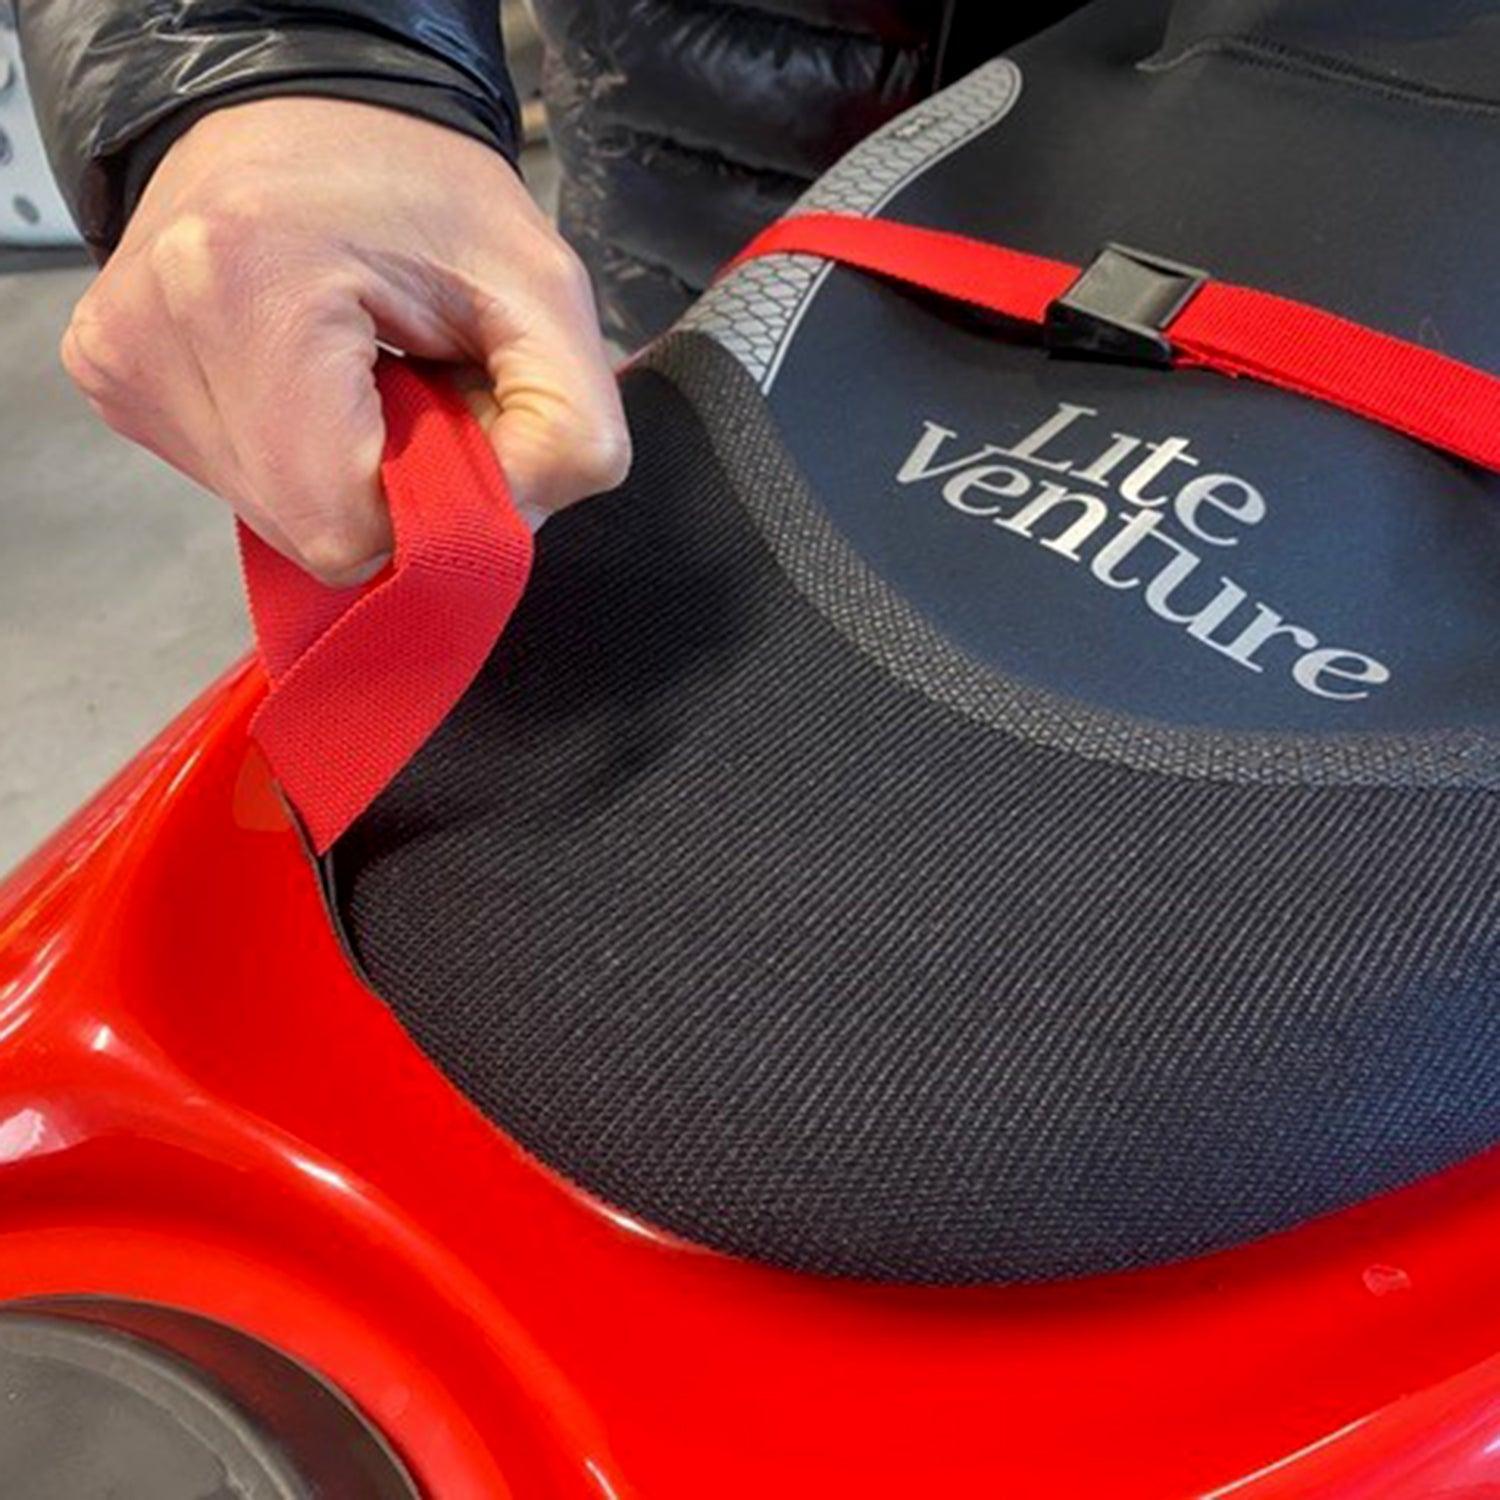 Produktbild von zubehör " Kajak Spritzdecke-Seekajak " der Marke Lite Venture für 139.00 €. Erhältlich online bei Lite Venture ( www.liteventure.de )